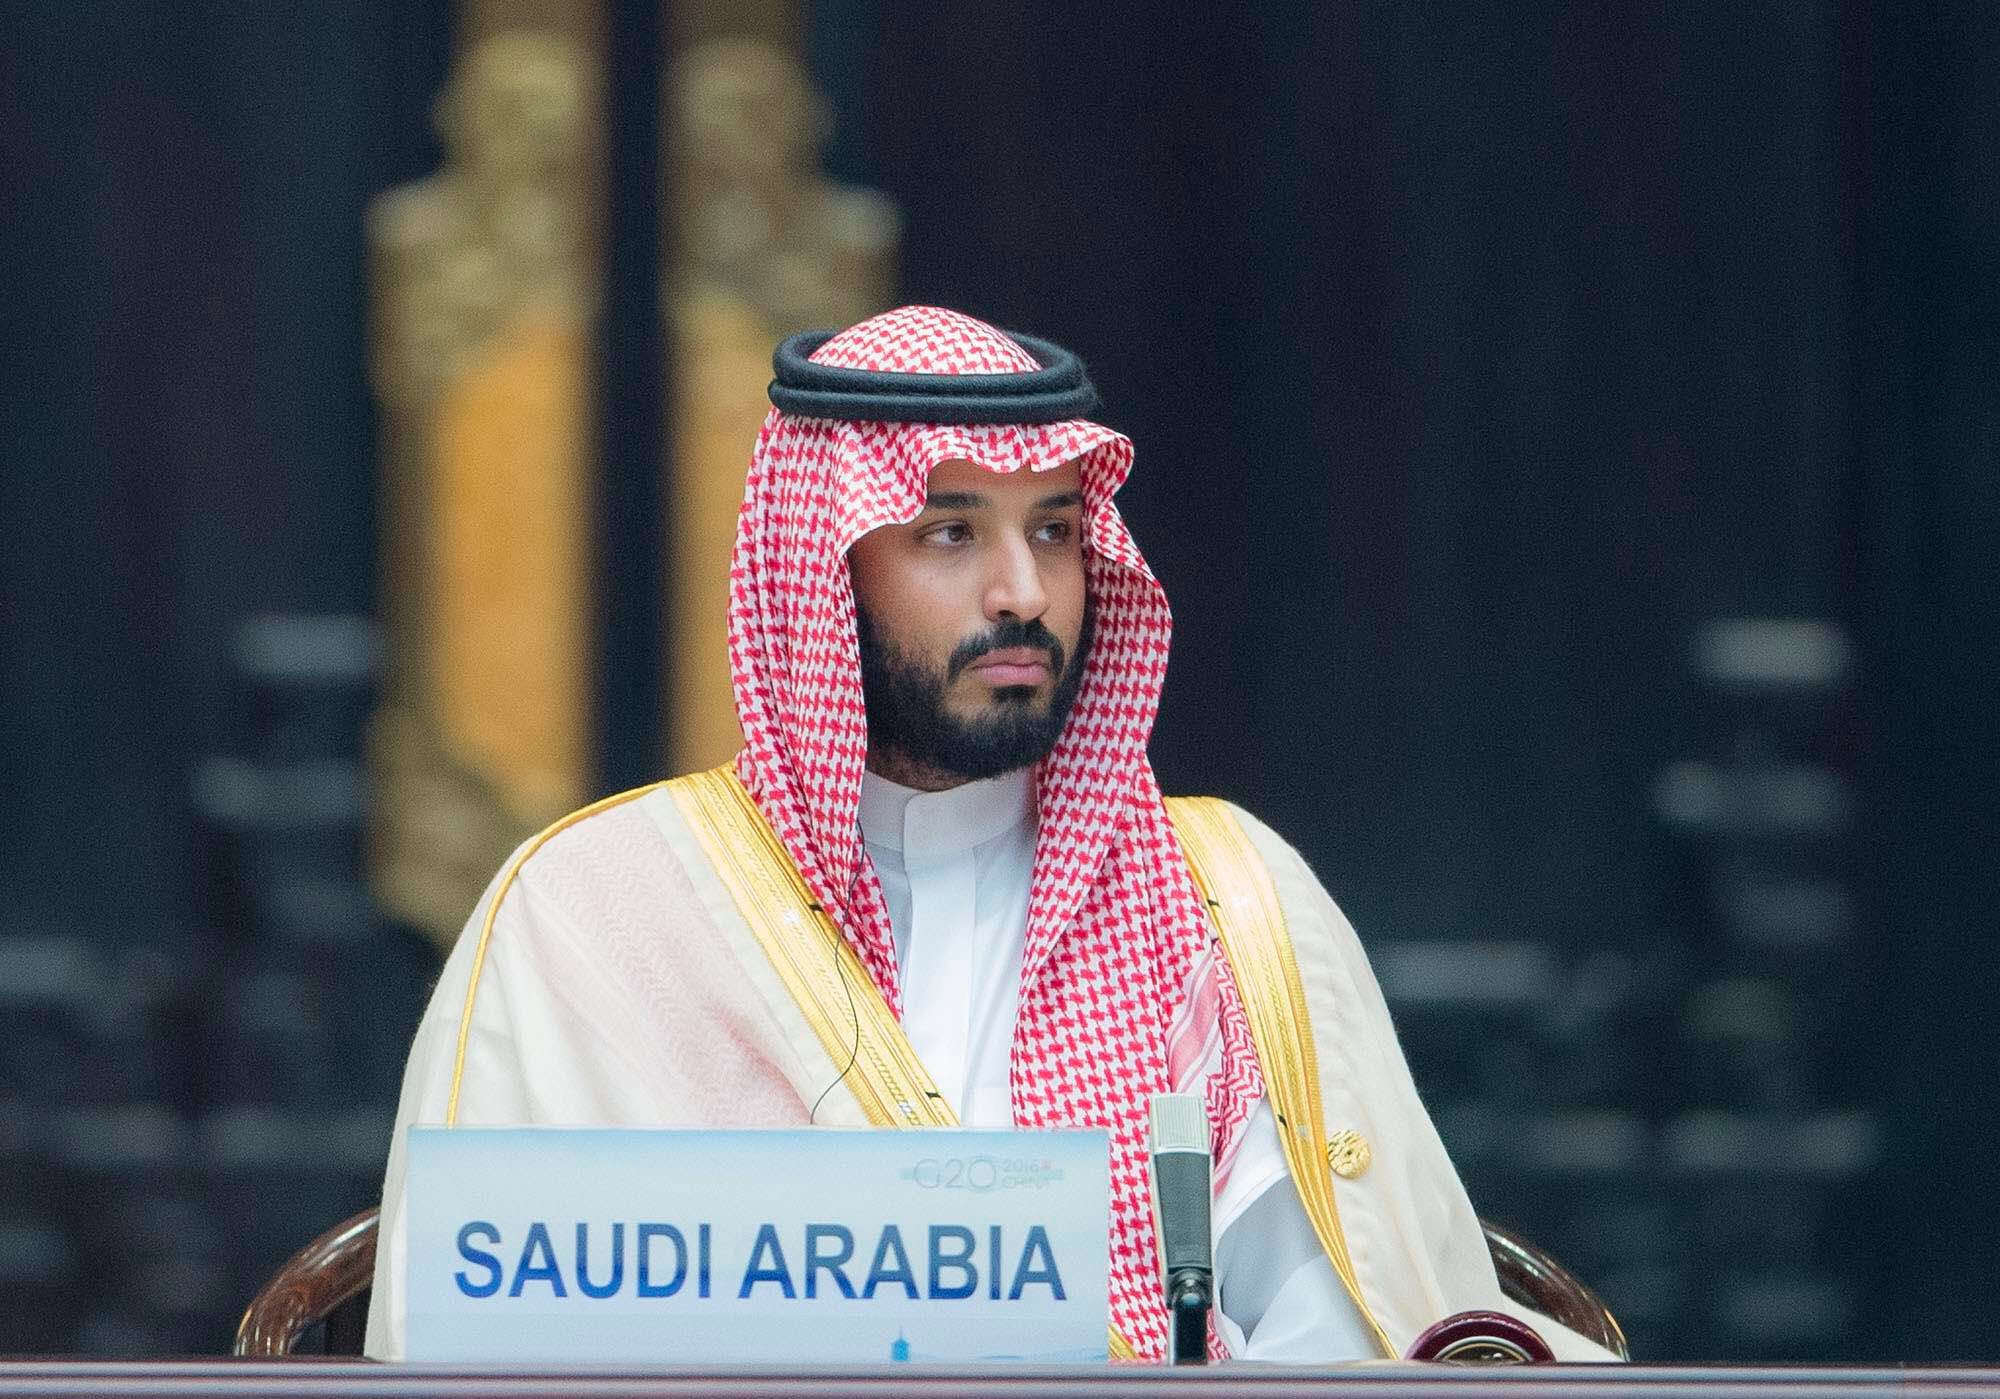 السعودية تسعى للسيطرة على التكنولوجيا العالمية - ولى العهد السعودي الامير محمد بن سلمان